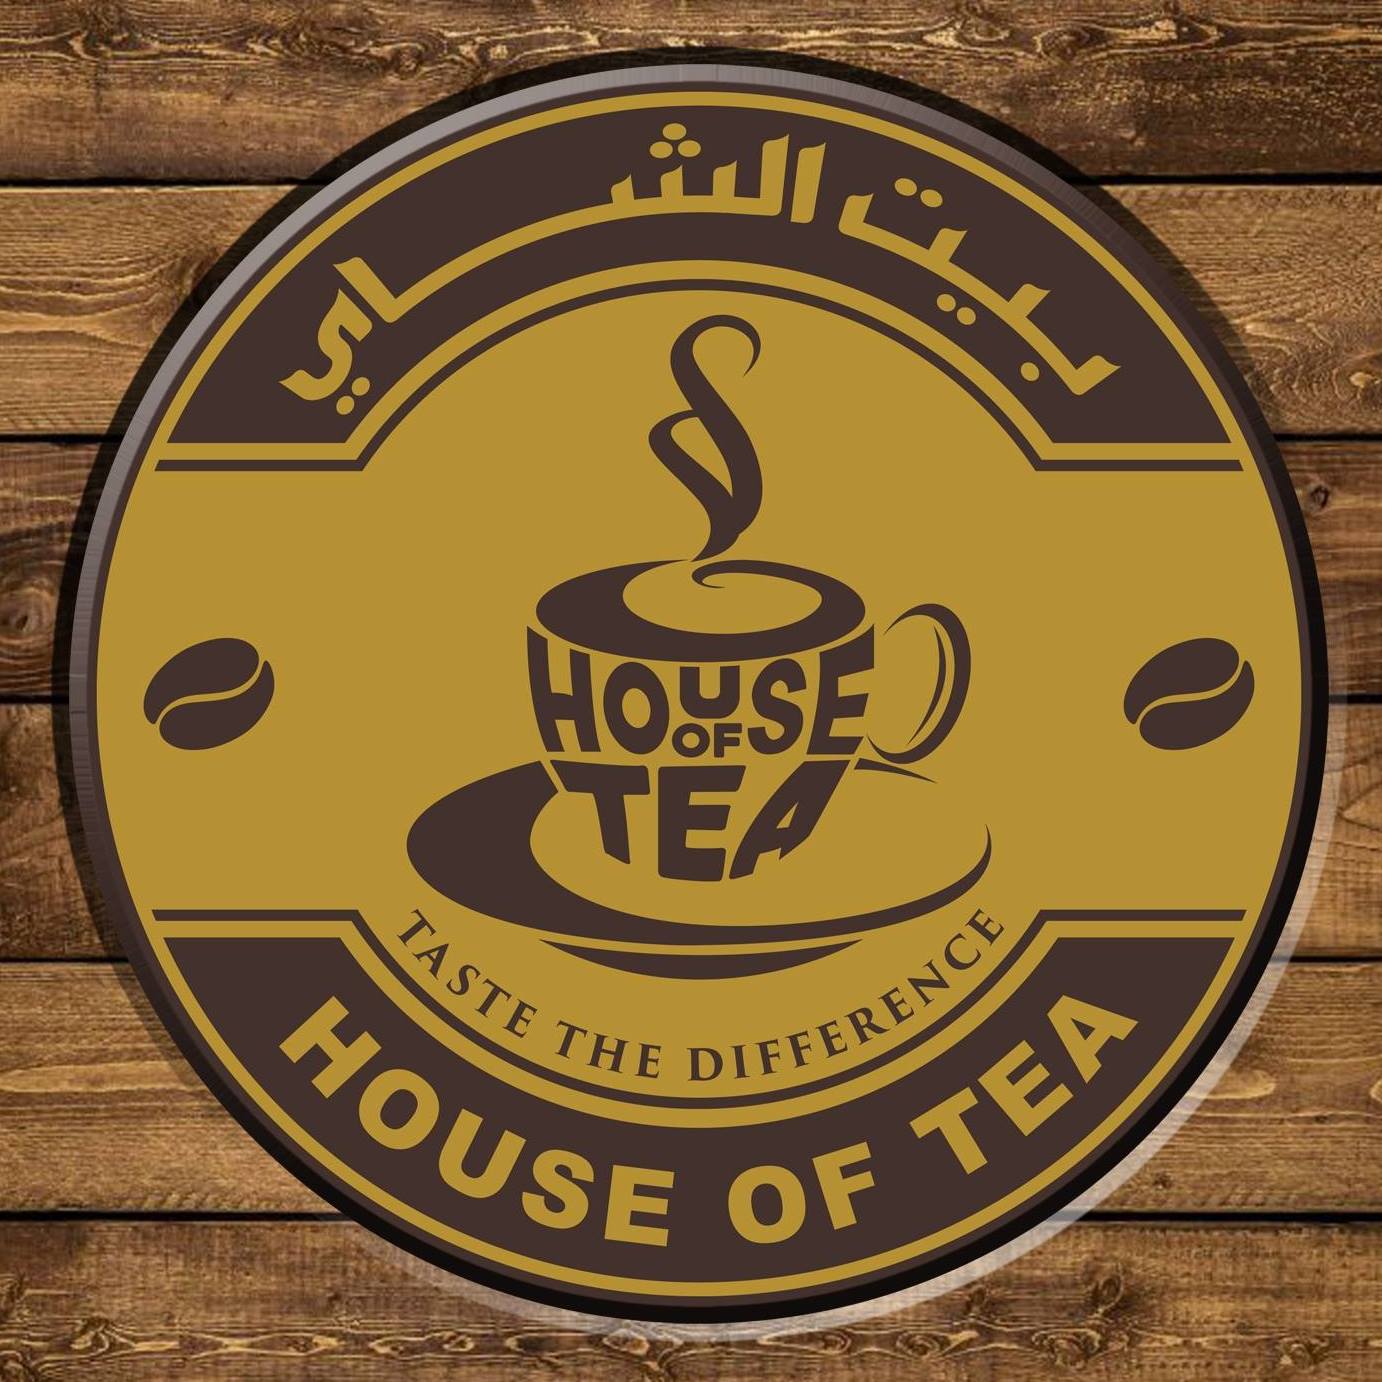 The House of Tea